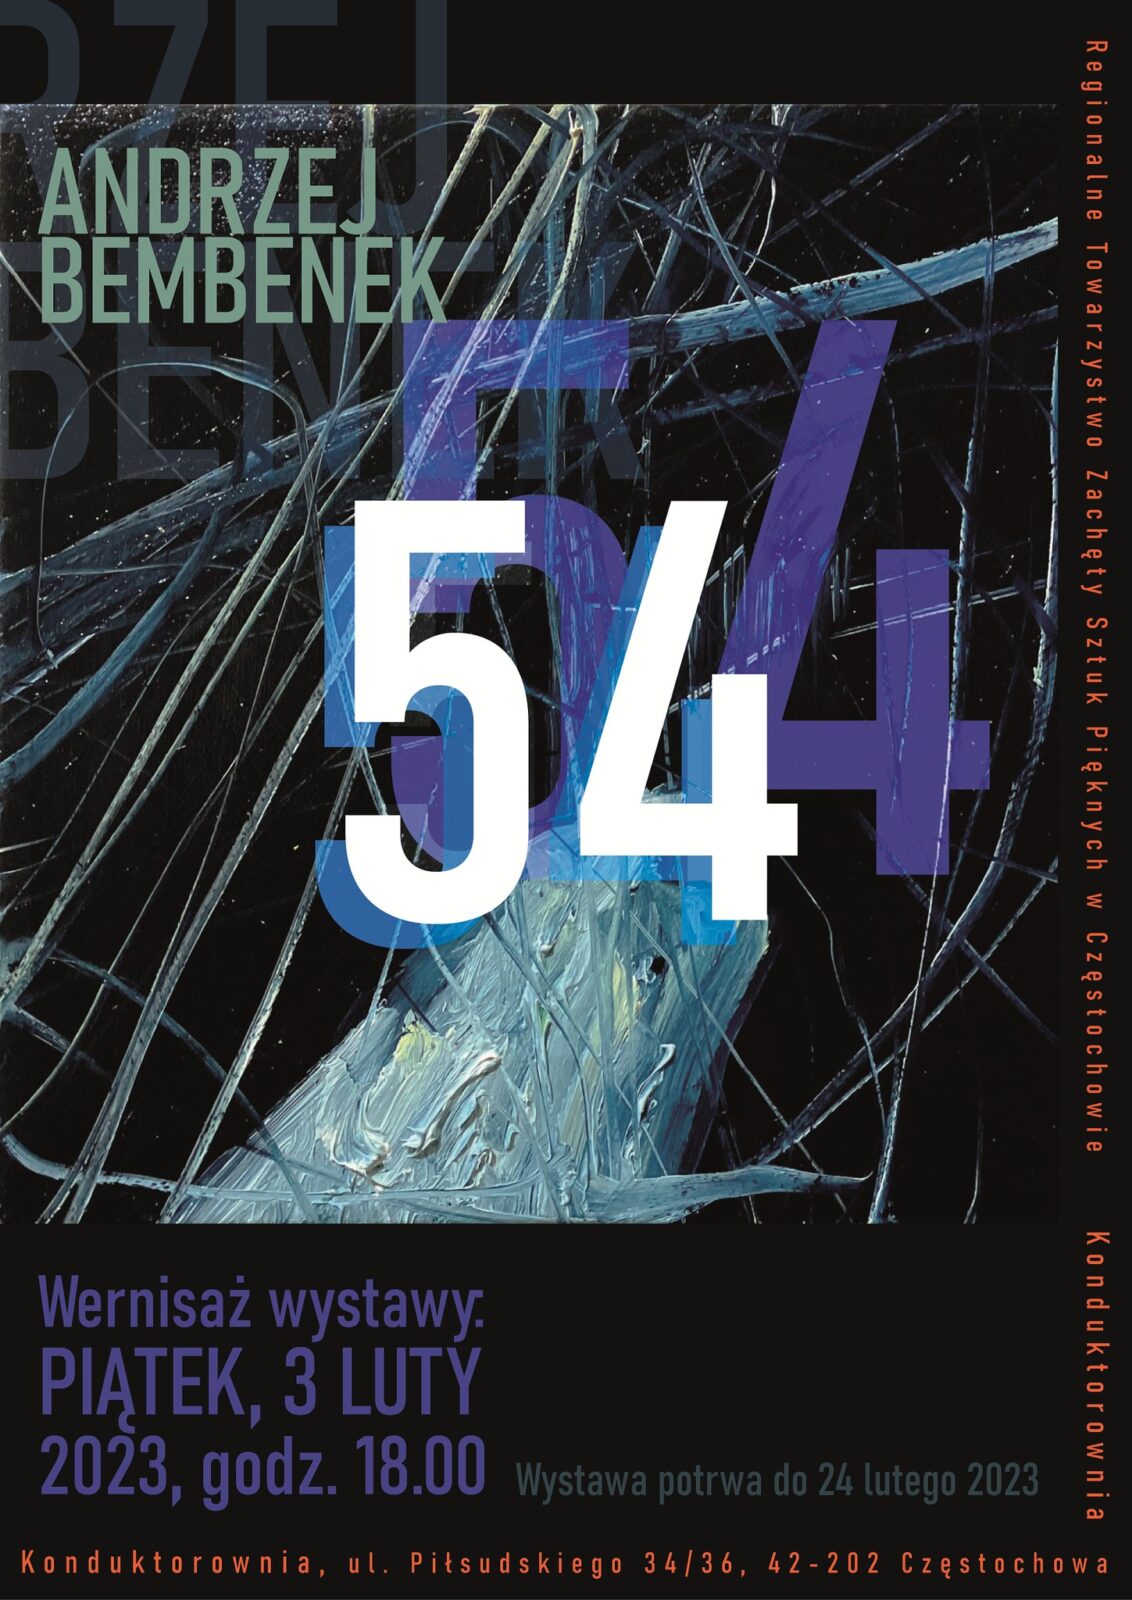 Nowa wystawa w częstochowskiej Konduktorowni. To "54" Andrzeja Bembenka 9